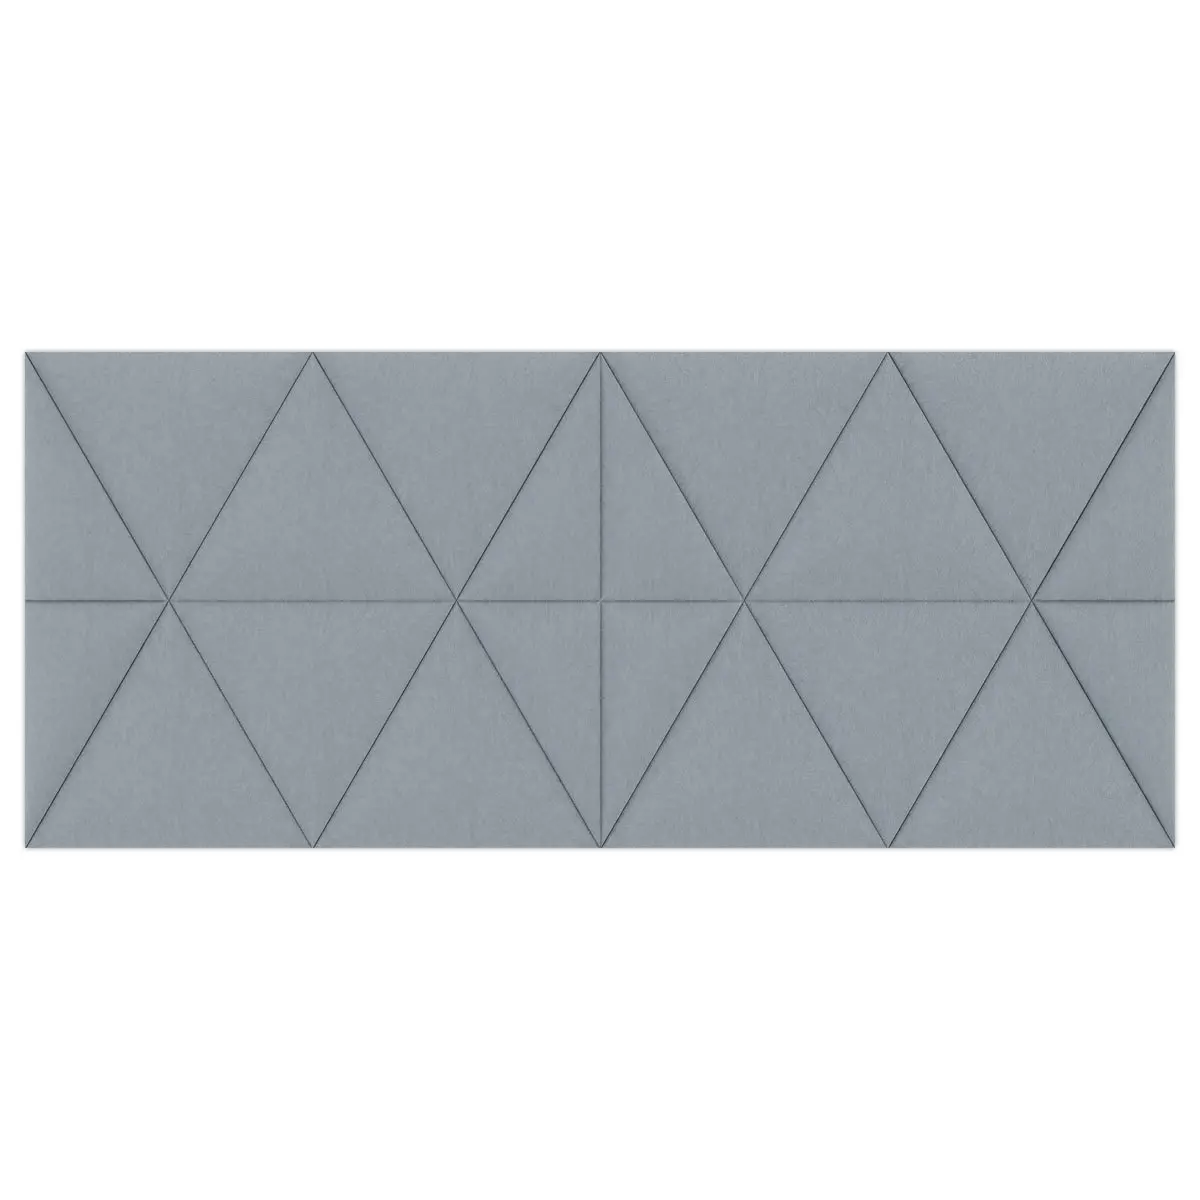 Panneaux acoustiques en tissu muraux gris photo du produit